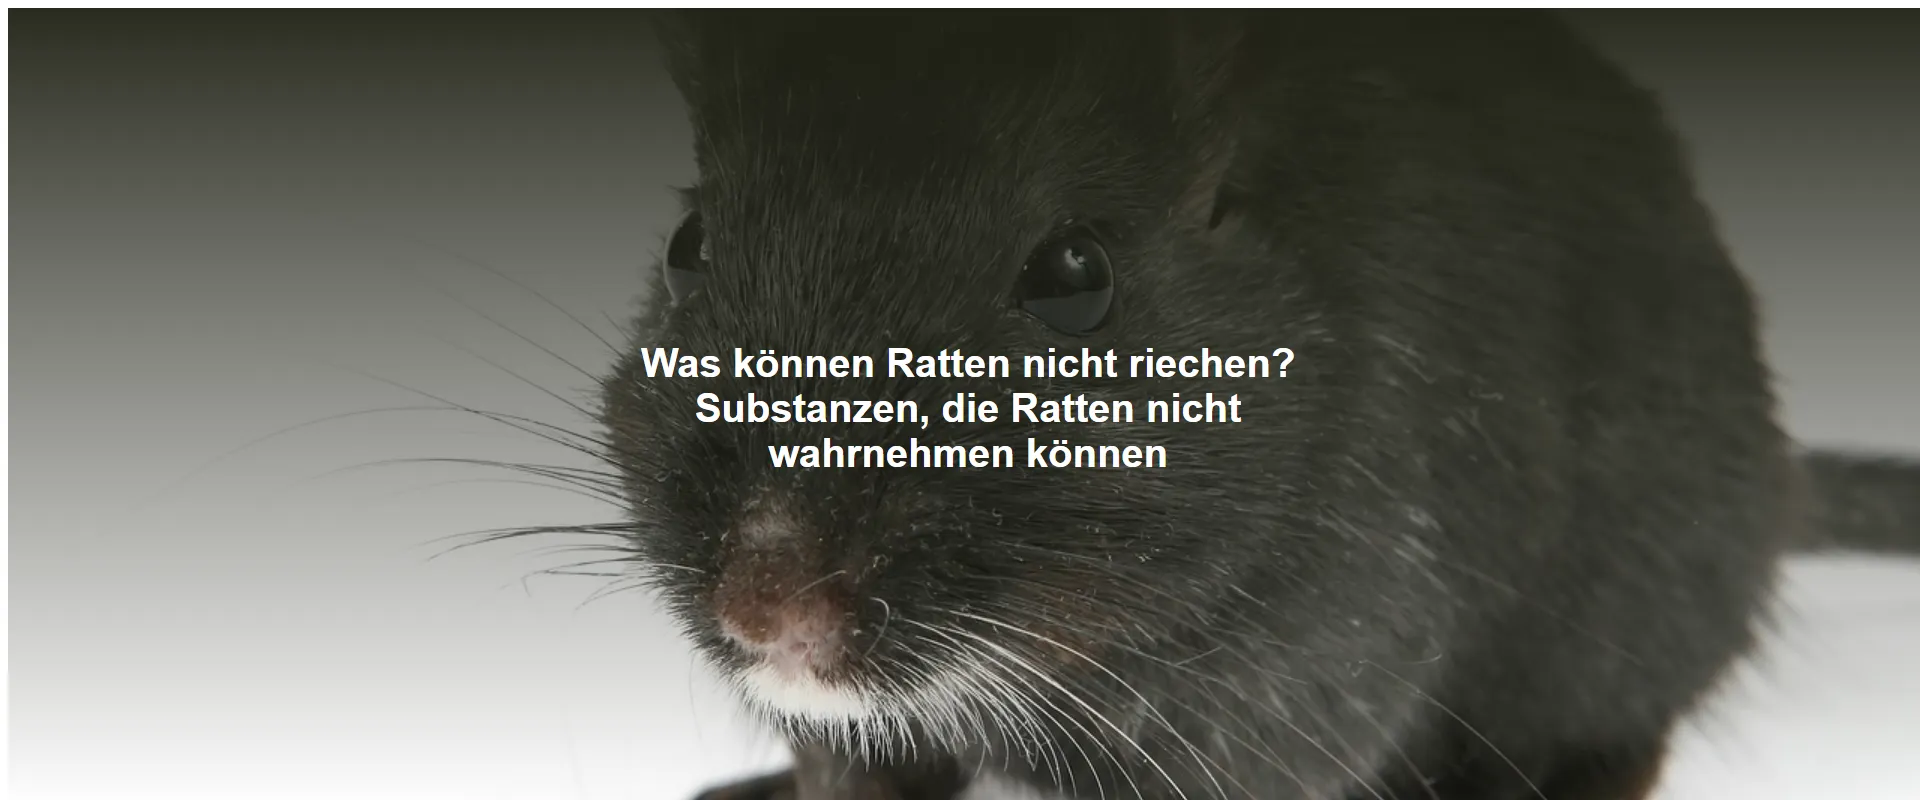 Was können Ratten nicht riechen? Substanzen, die Ratten nicht wahrnehmen können